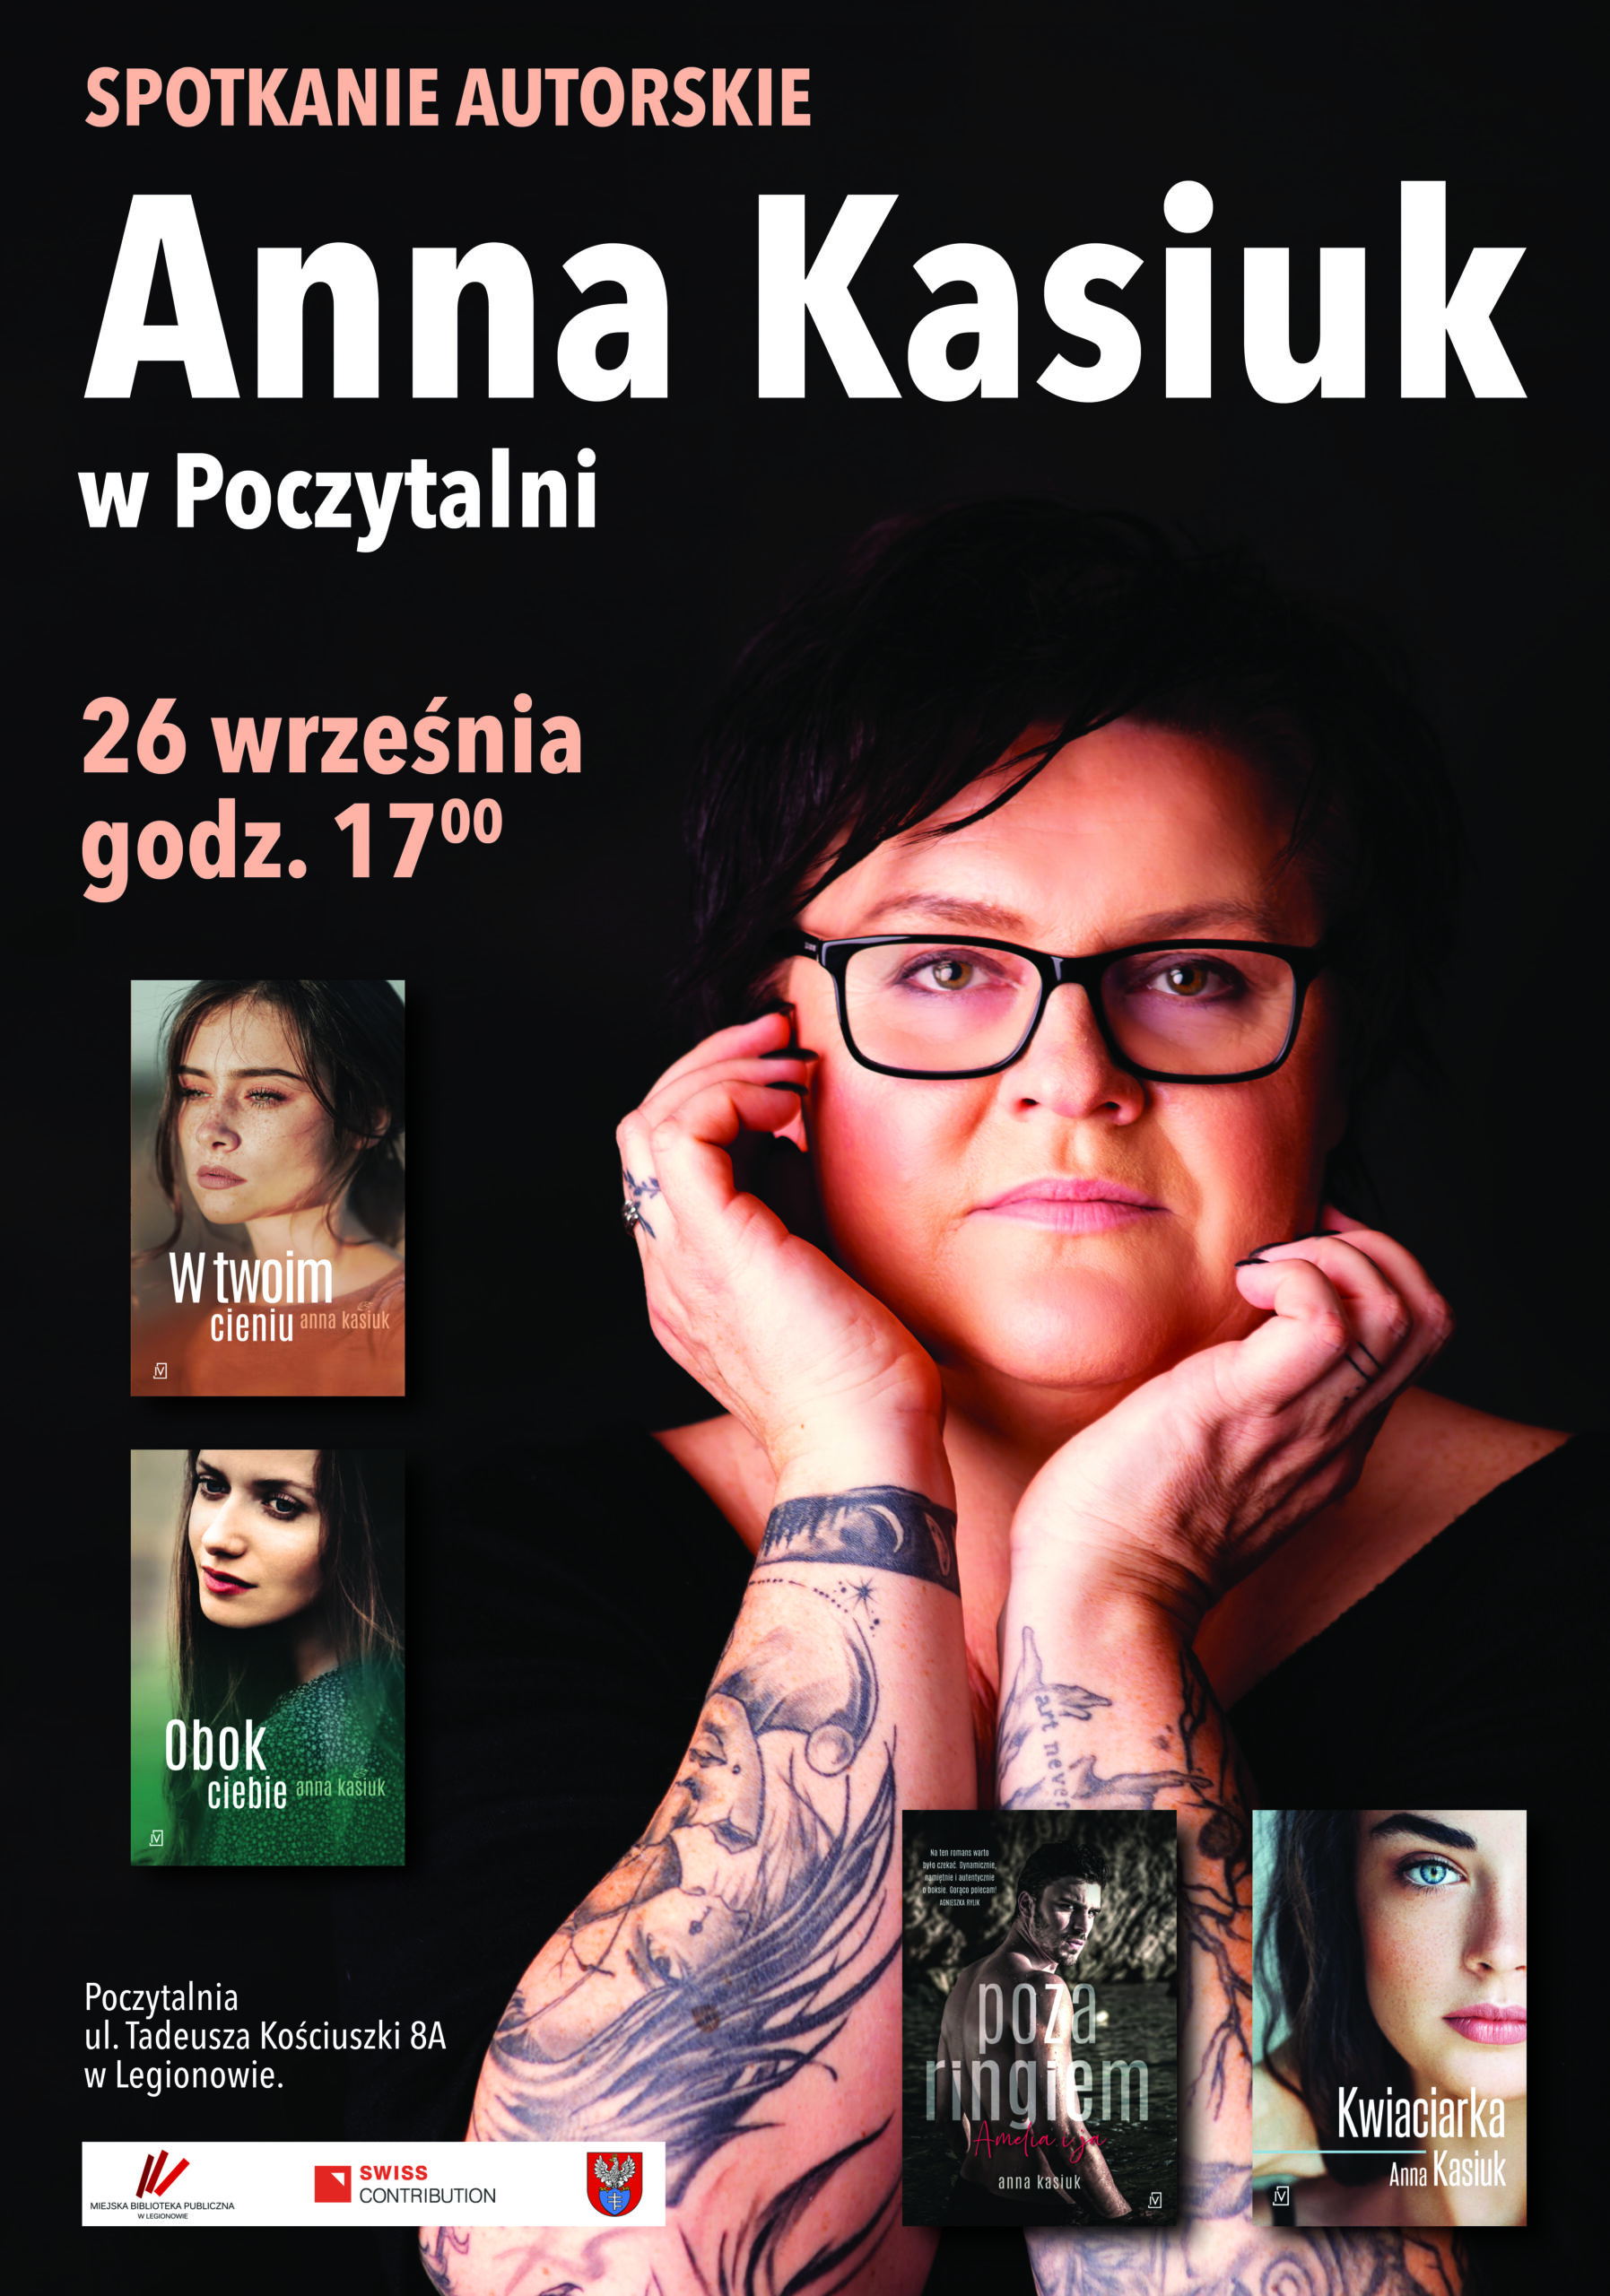 Na plakacie na pierwszym planie zdjęcie autorki, napis "Anna Kasiuk w Poczytalnia. 26 września godz. 17.00". Mniej wyróżnione okładki książek: "W Twoim cieniu", "Obok ciebie", "Poza ringiem", "Kwiaciarka".